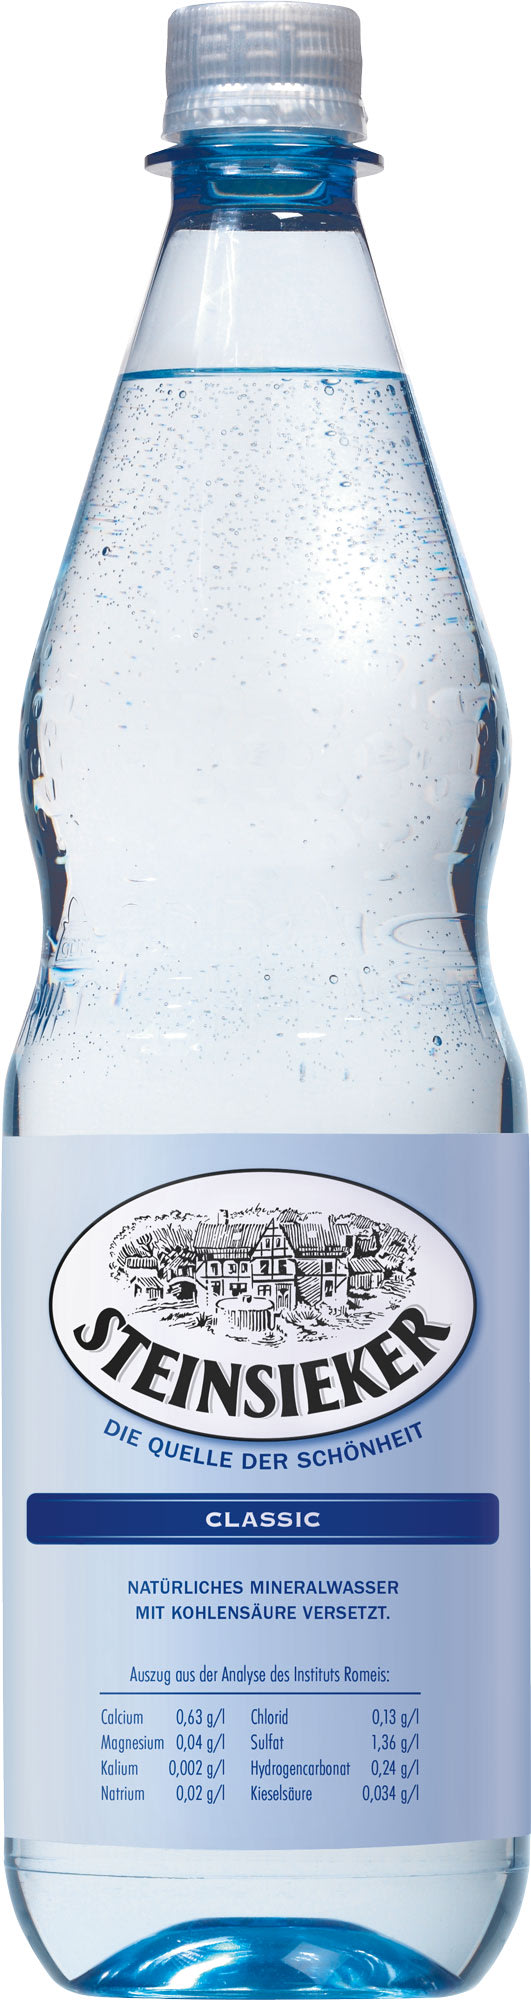 Steinsieker Mineralwasser Classic Kasten 12 x 1 l PET Mehrweg